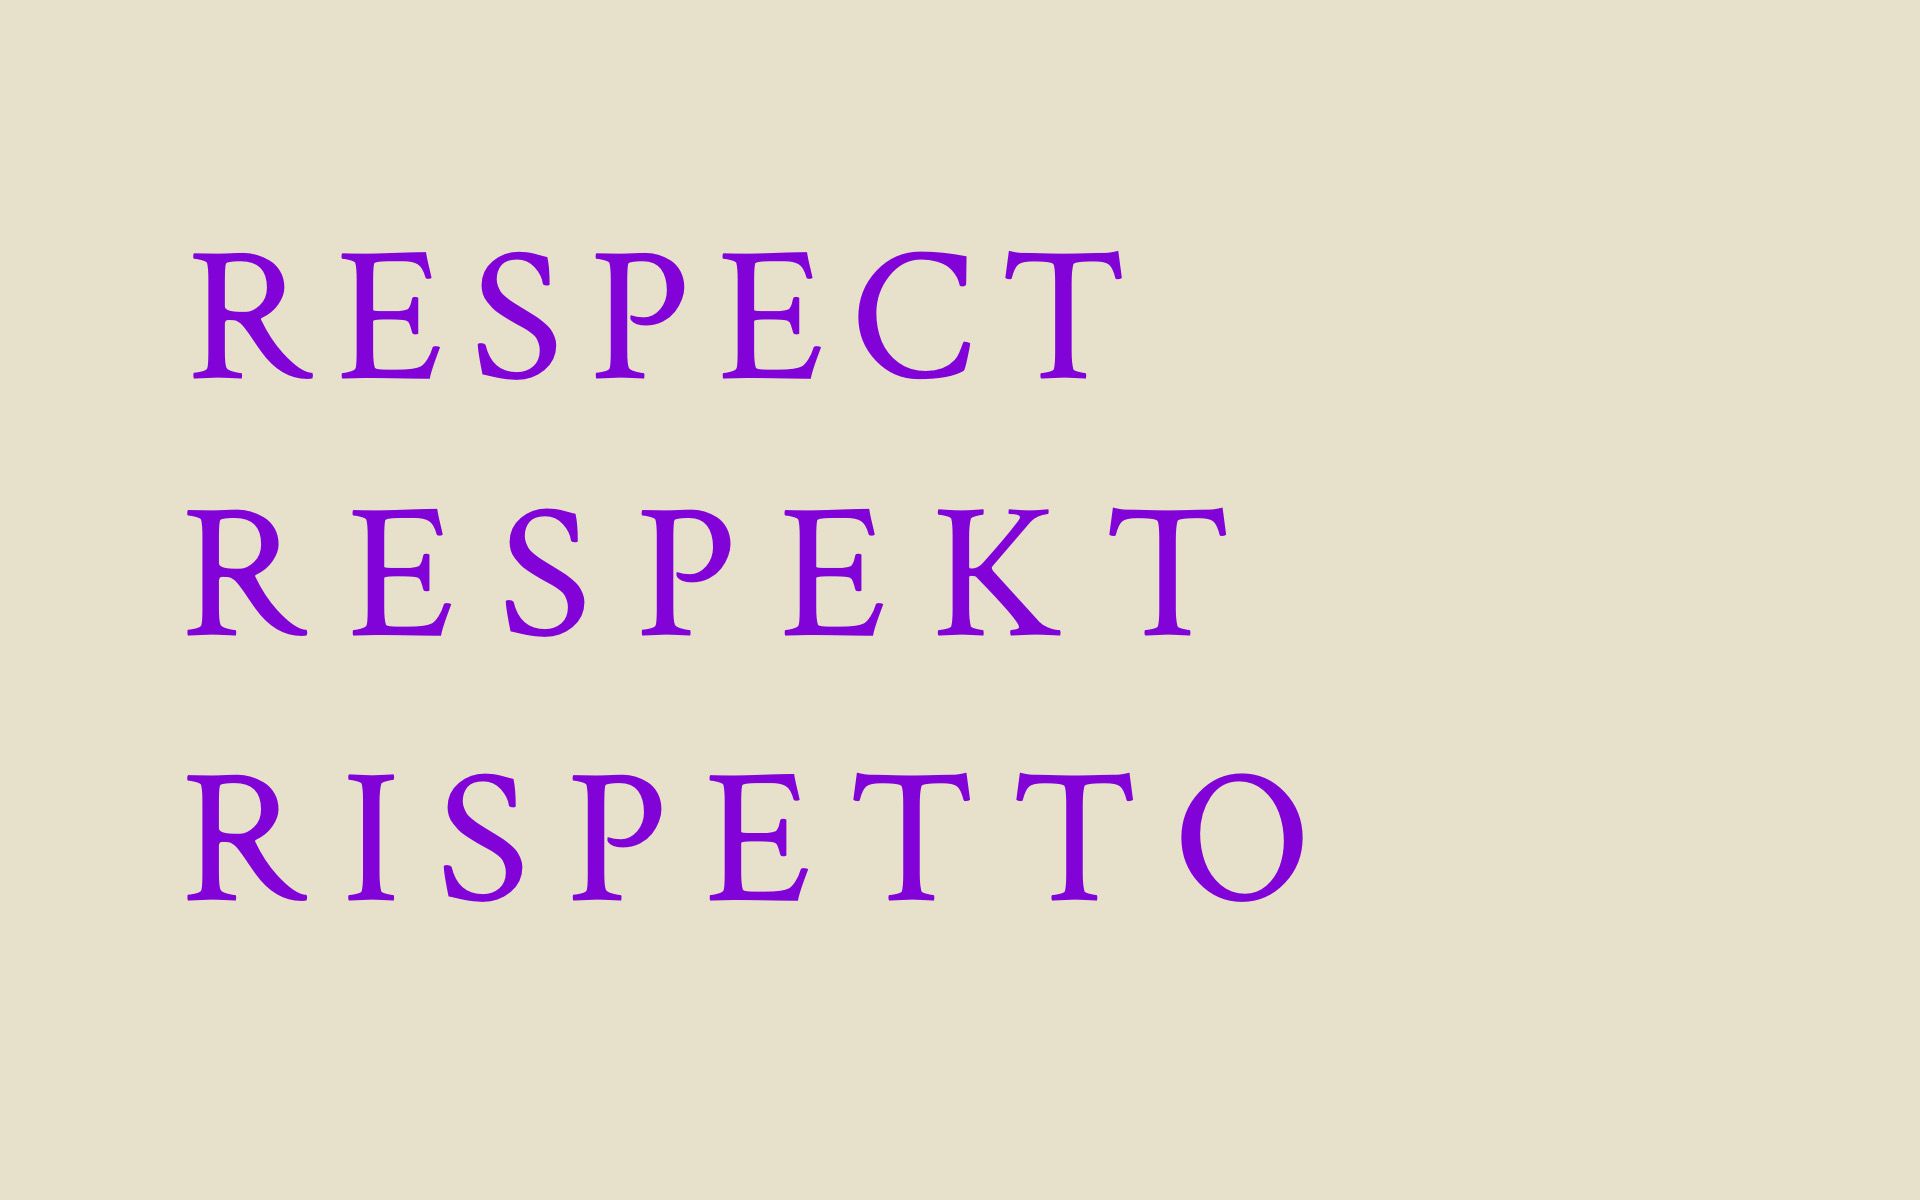 Surface blanche sur laquelle la valeur «Respekt» figure au centre en allemand. Au-dessus, la traduction française «Respect» et au-dessous, la traduction italienne «Rispetto».